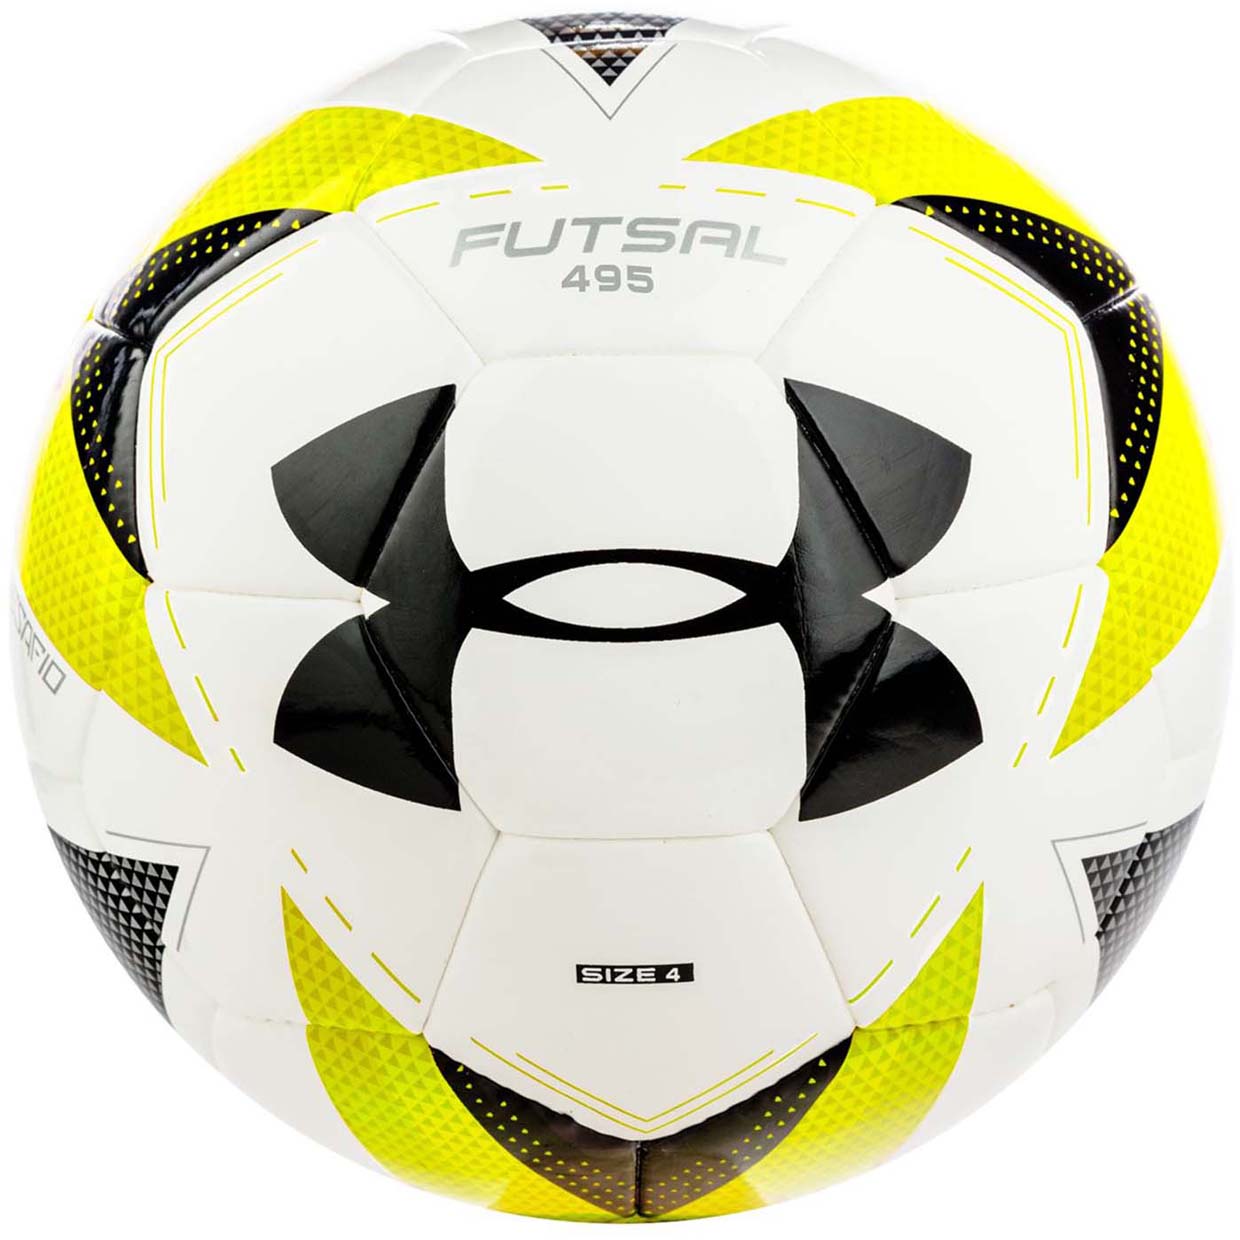 Футбольный мяч Under Armour Futsal 495 1311164-100